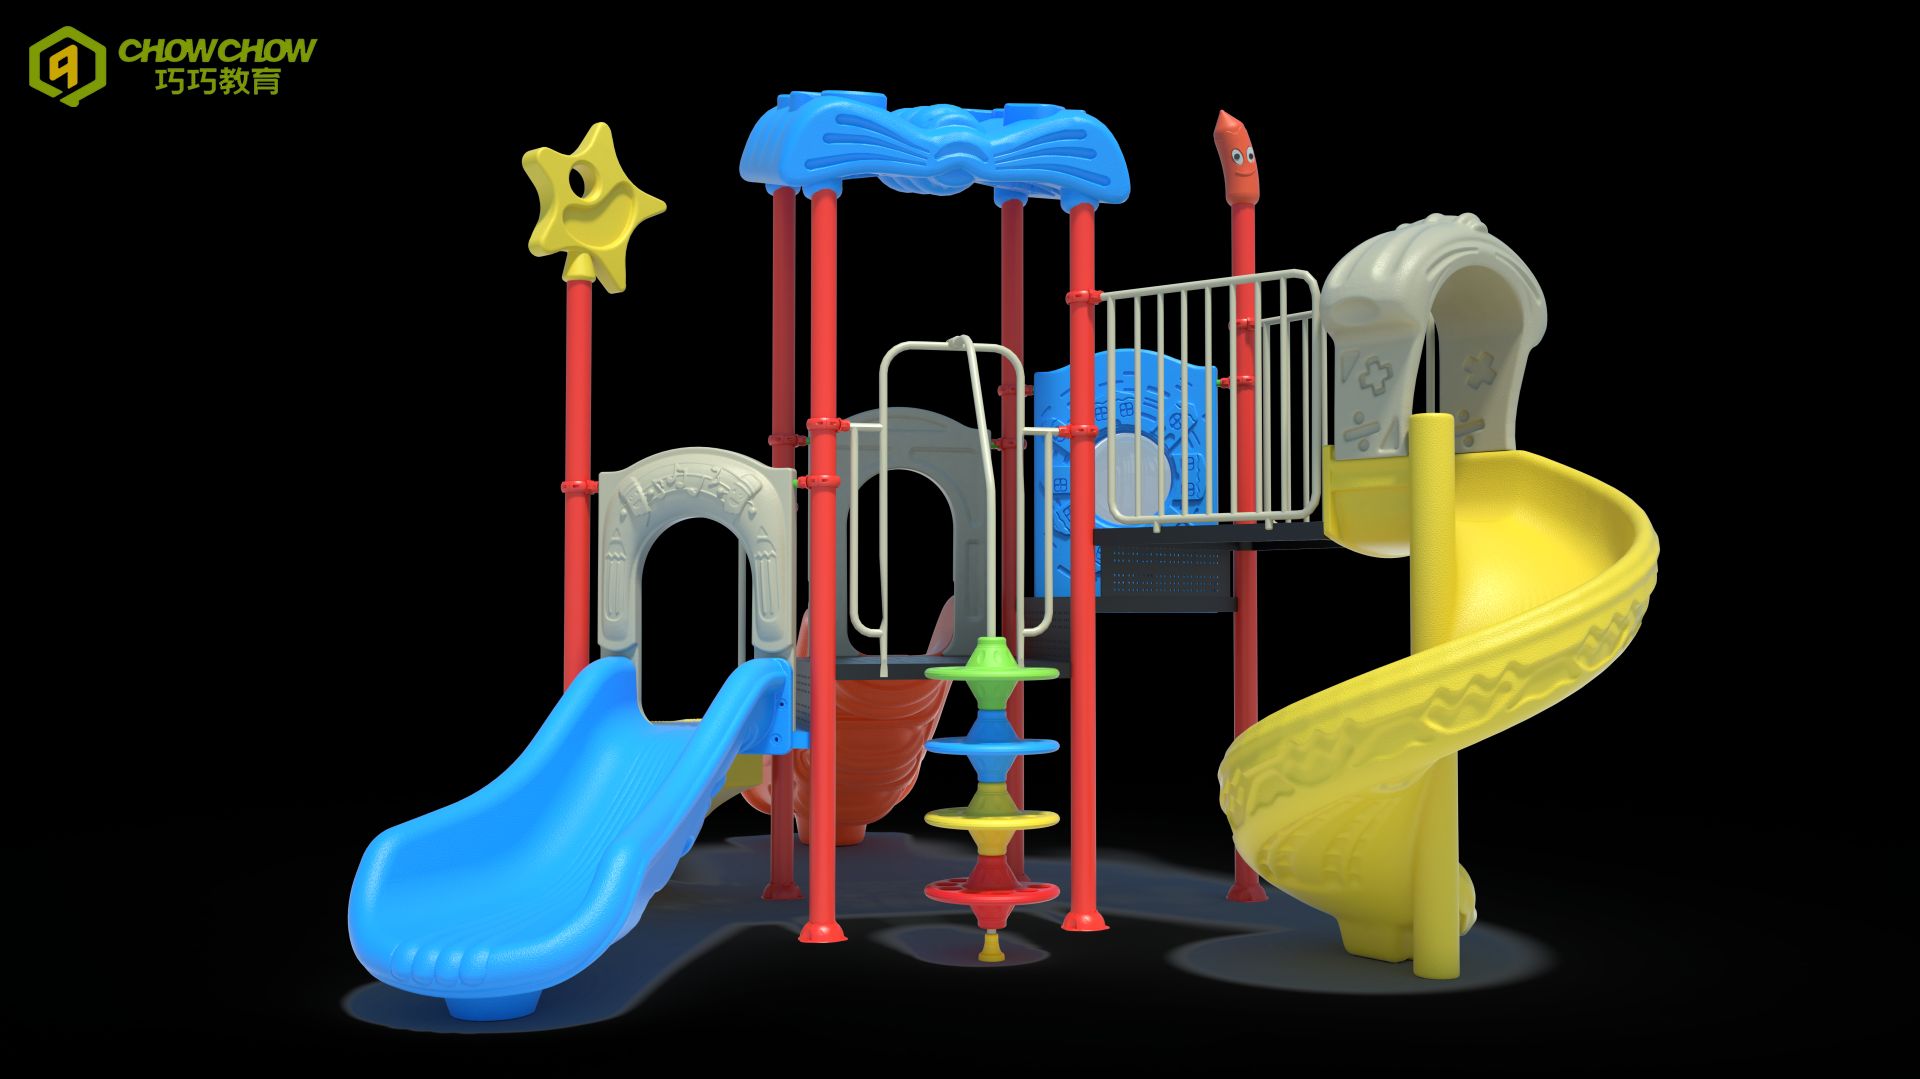 Kindergarten Kids Small Playground Equipment Outdoor Plastic Slide Playground Children Outdoor Playground for Children